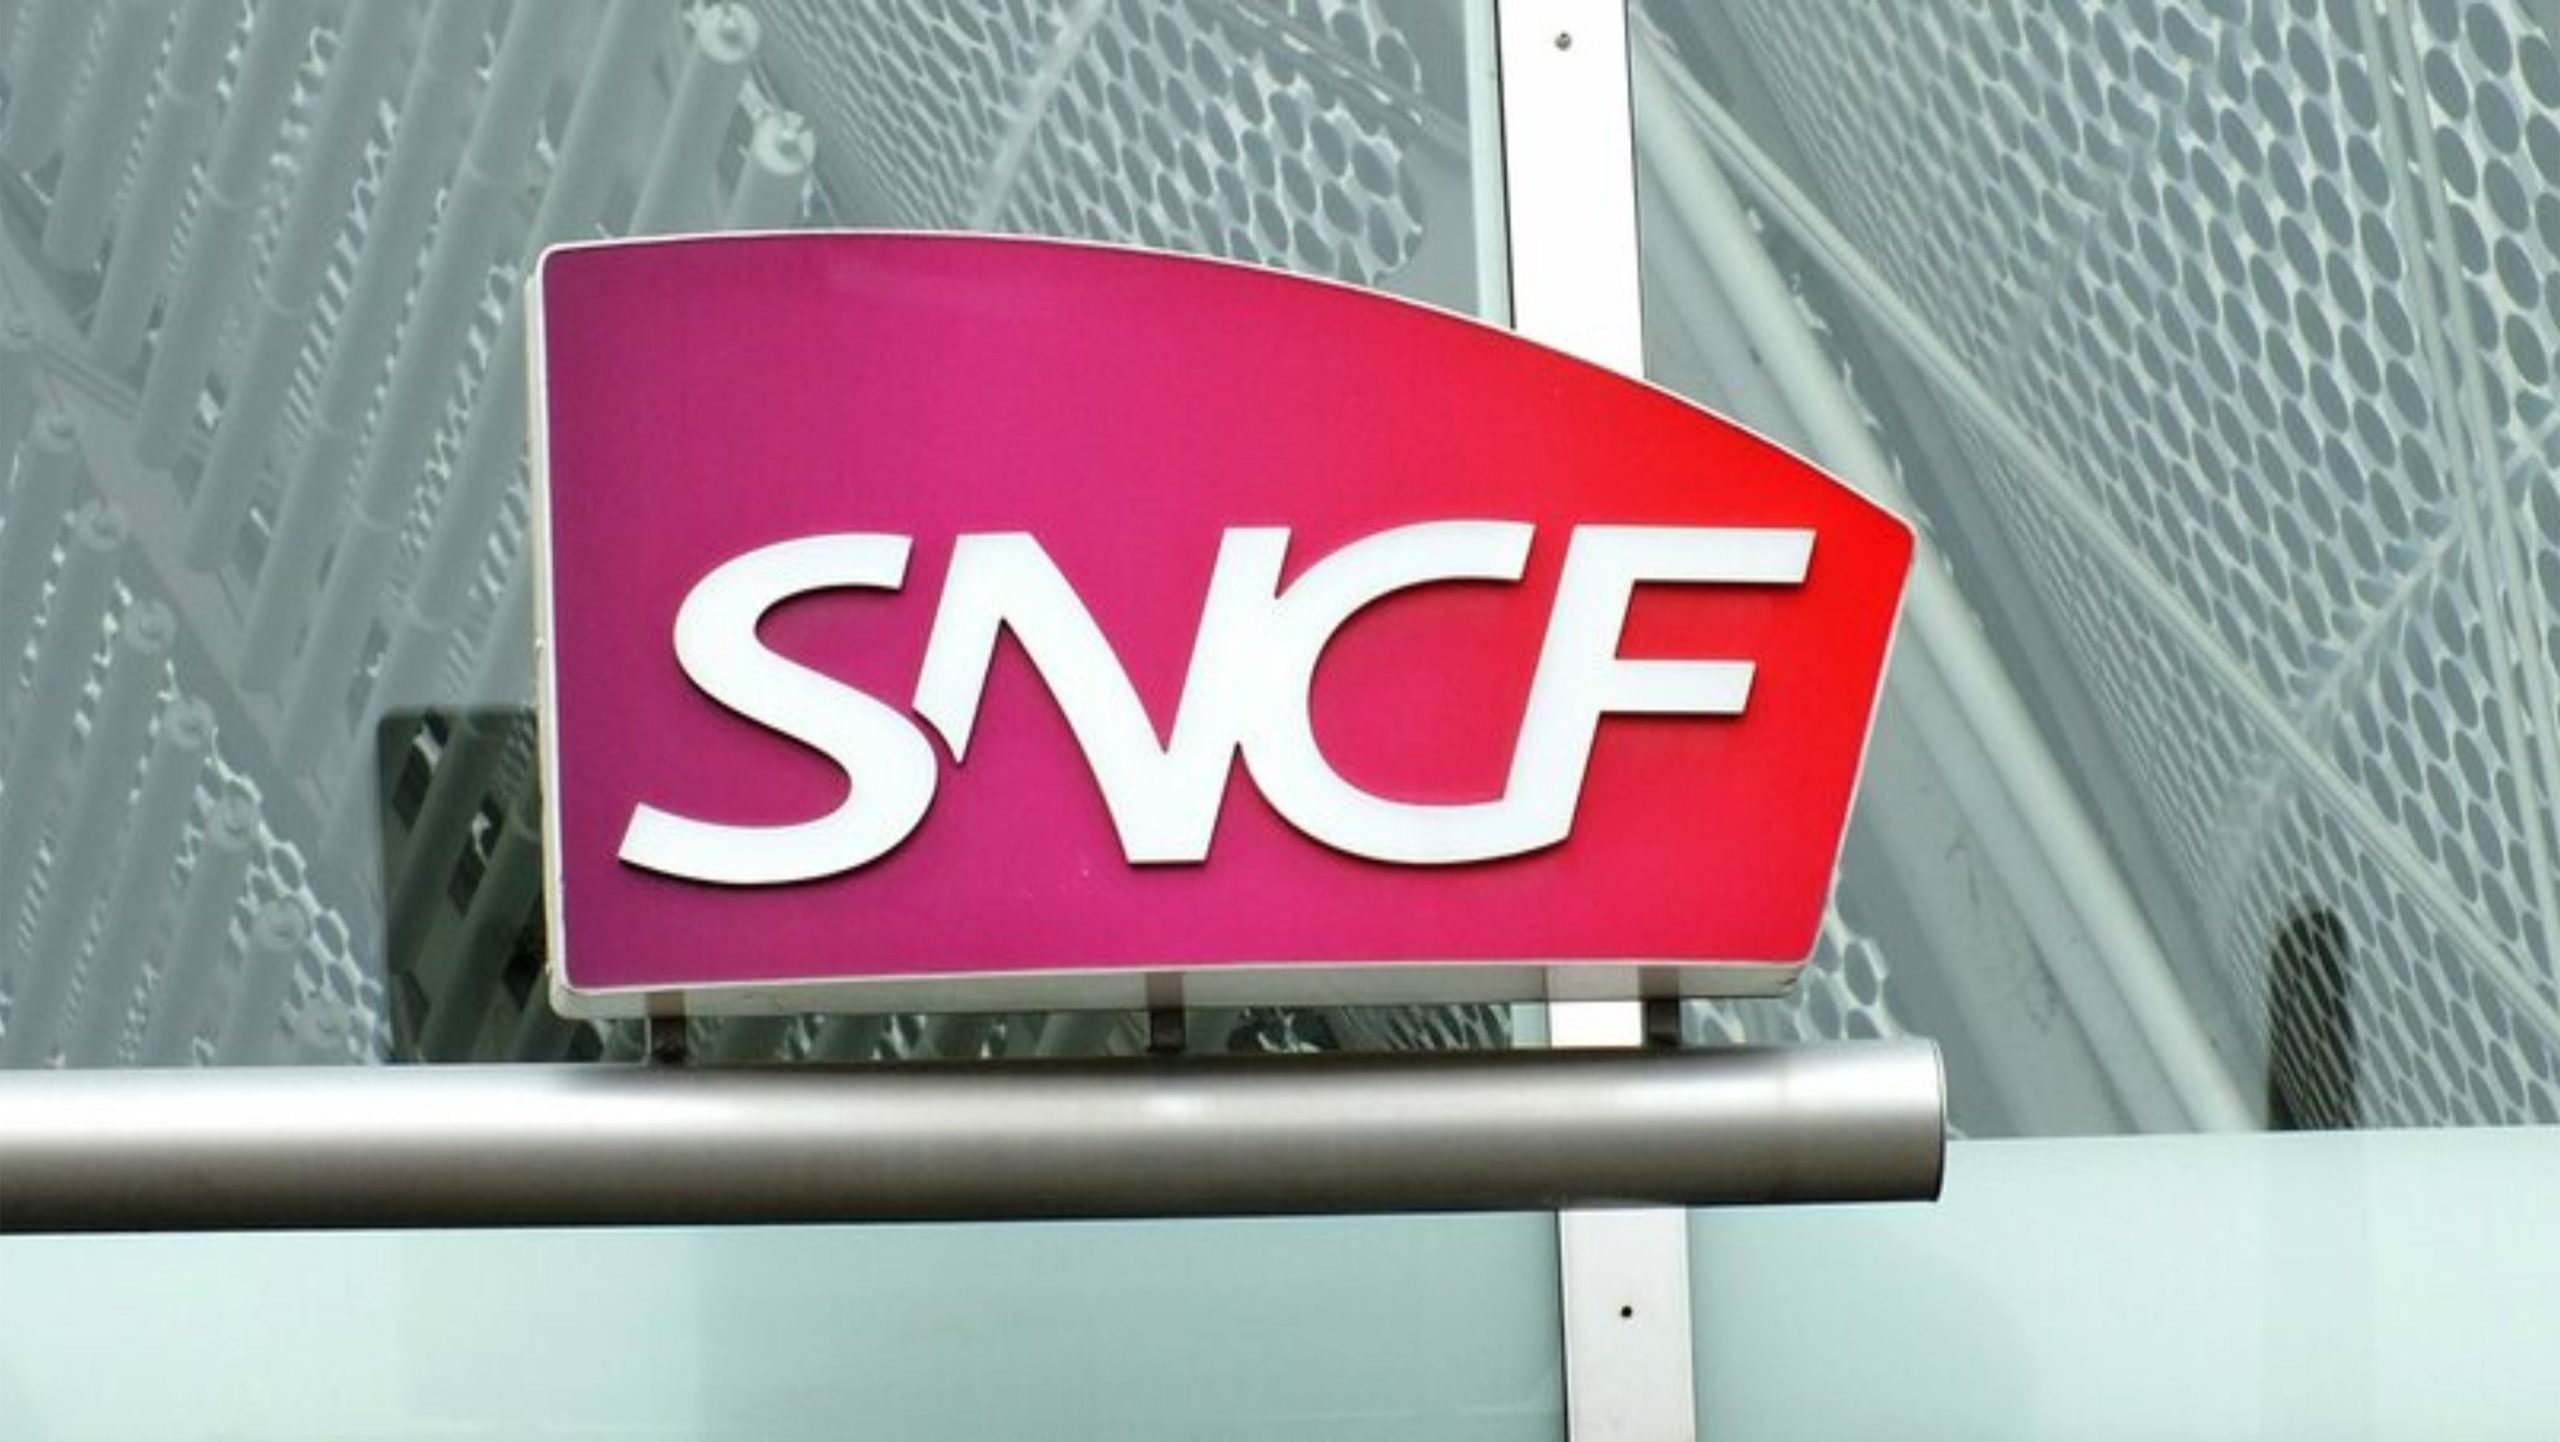 Opportunité de service public à la SNCF : plus de 130 offres d’emploi en France pour les services clients et nettoyage, assistants, chauffeurs et plus